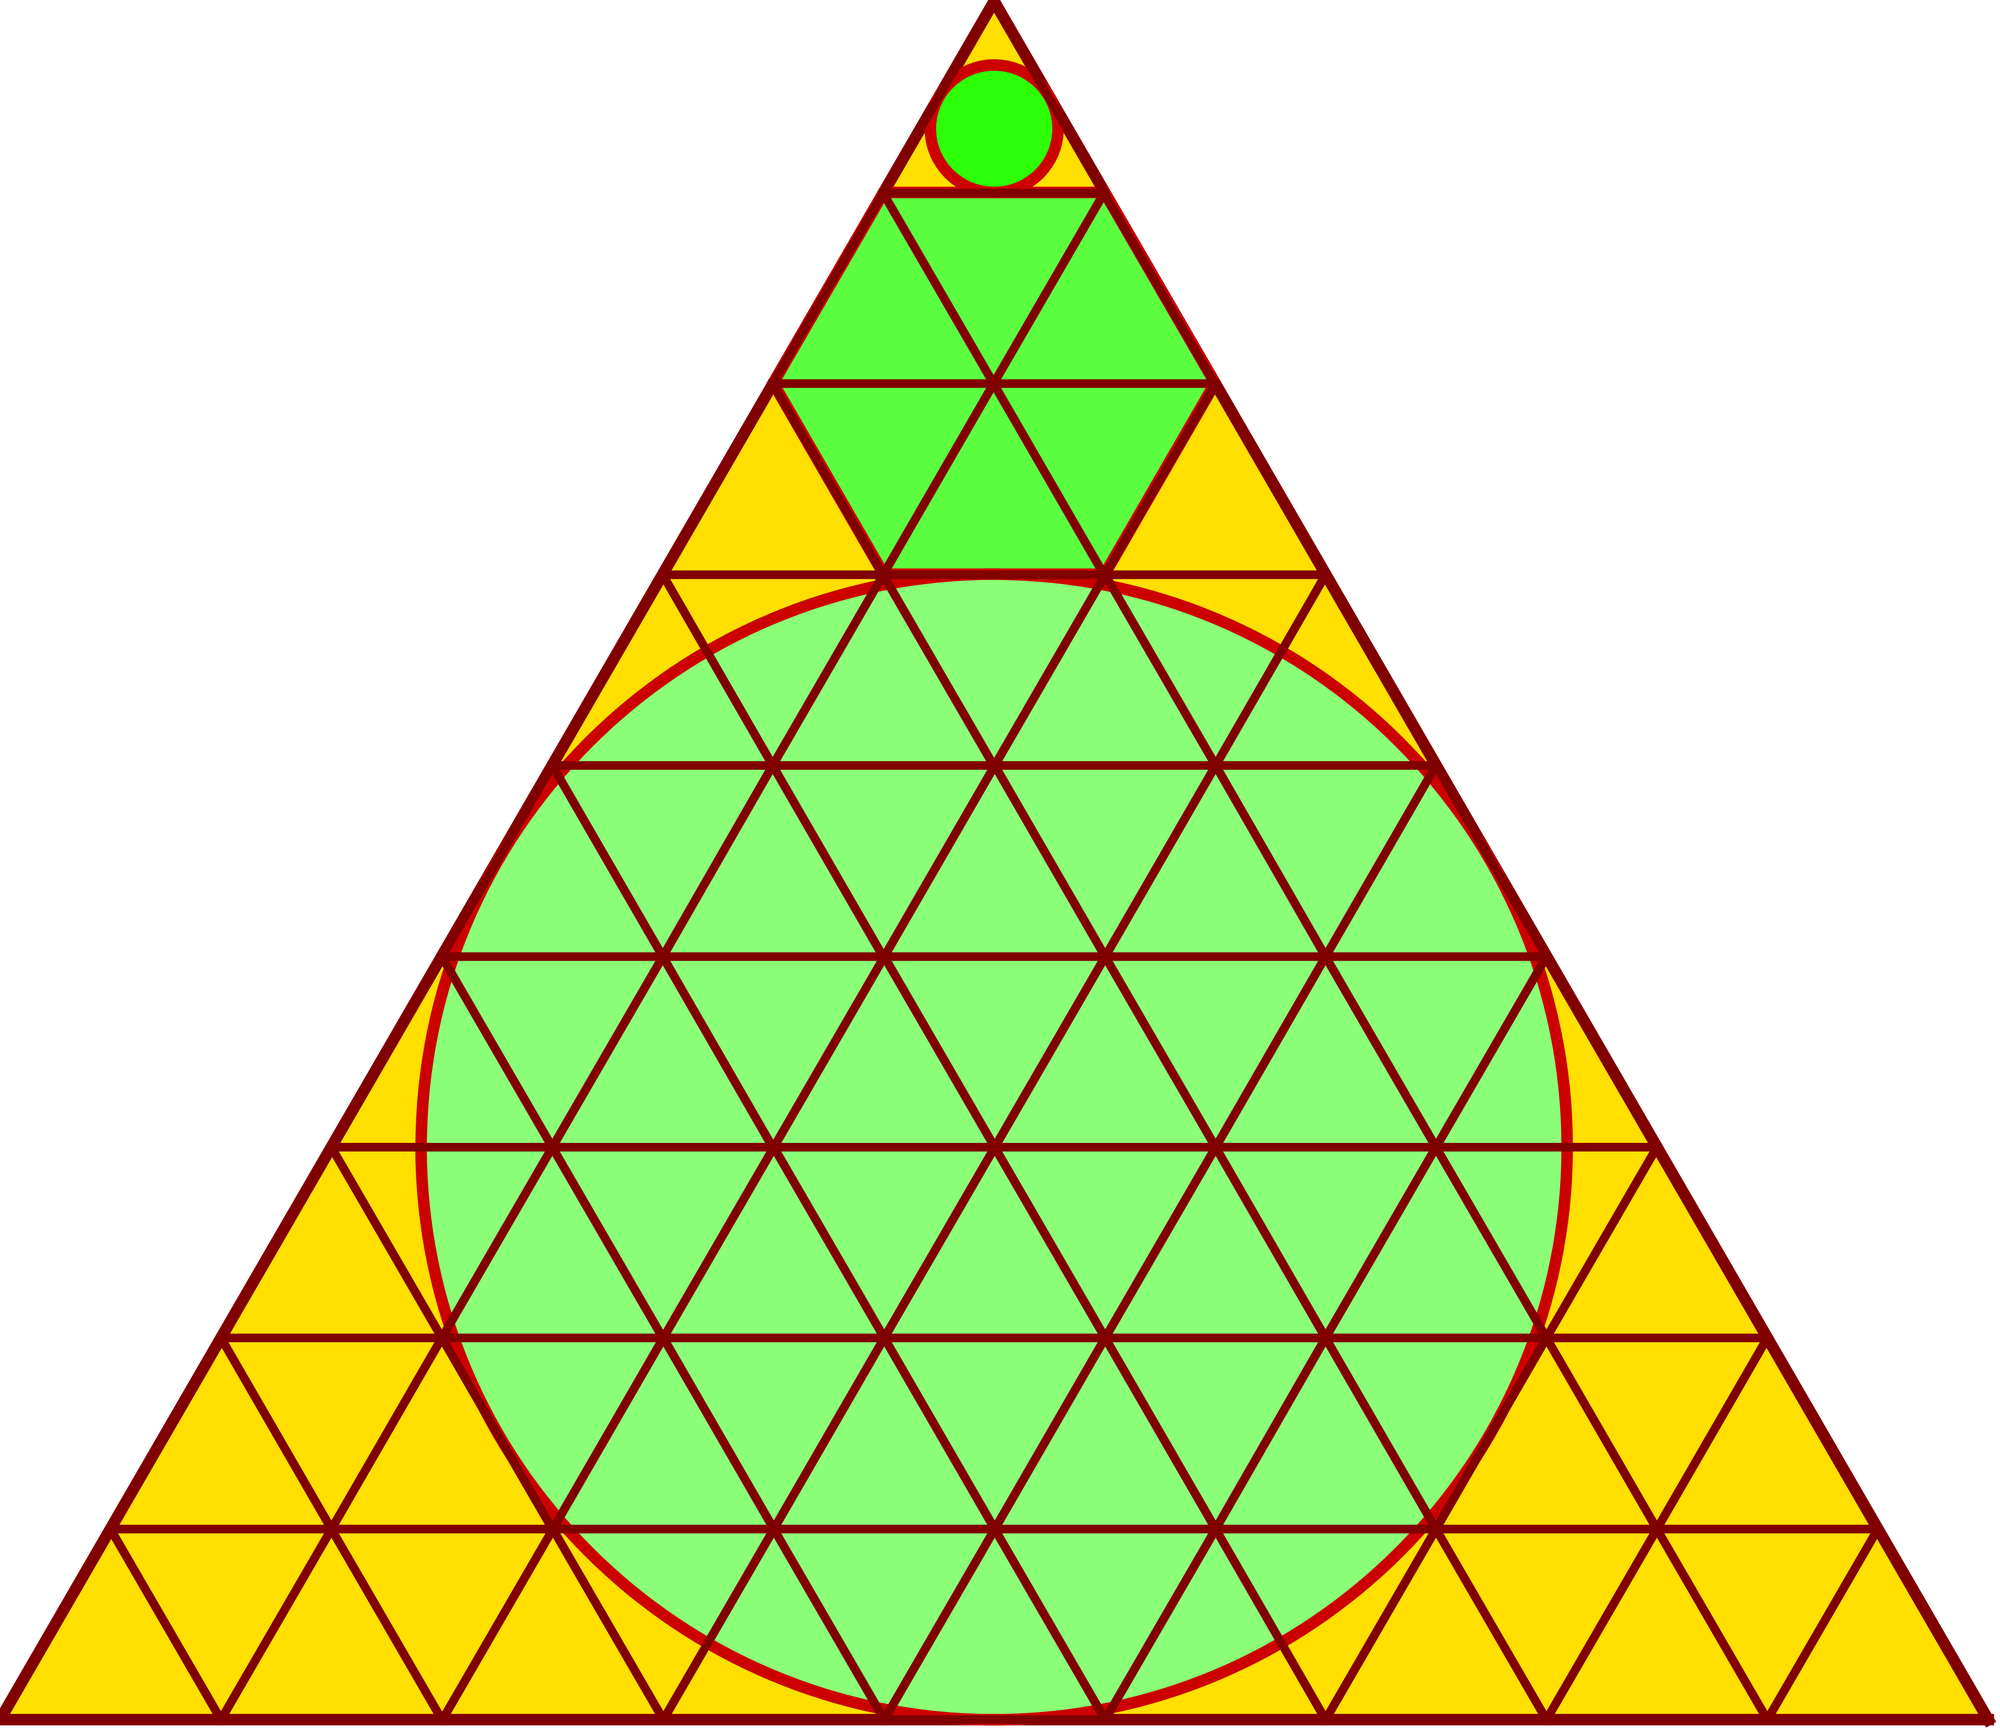 Kreise im Dreieck gelöst